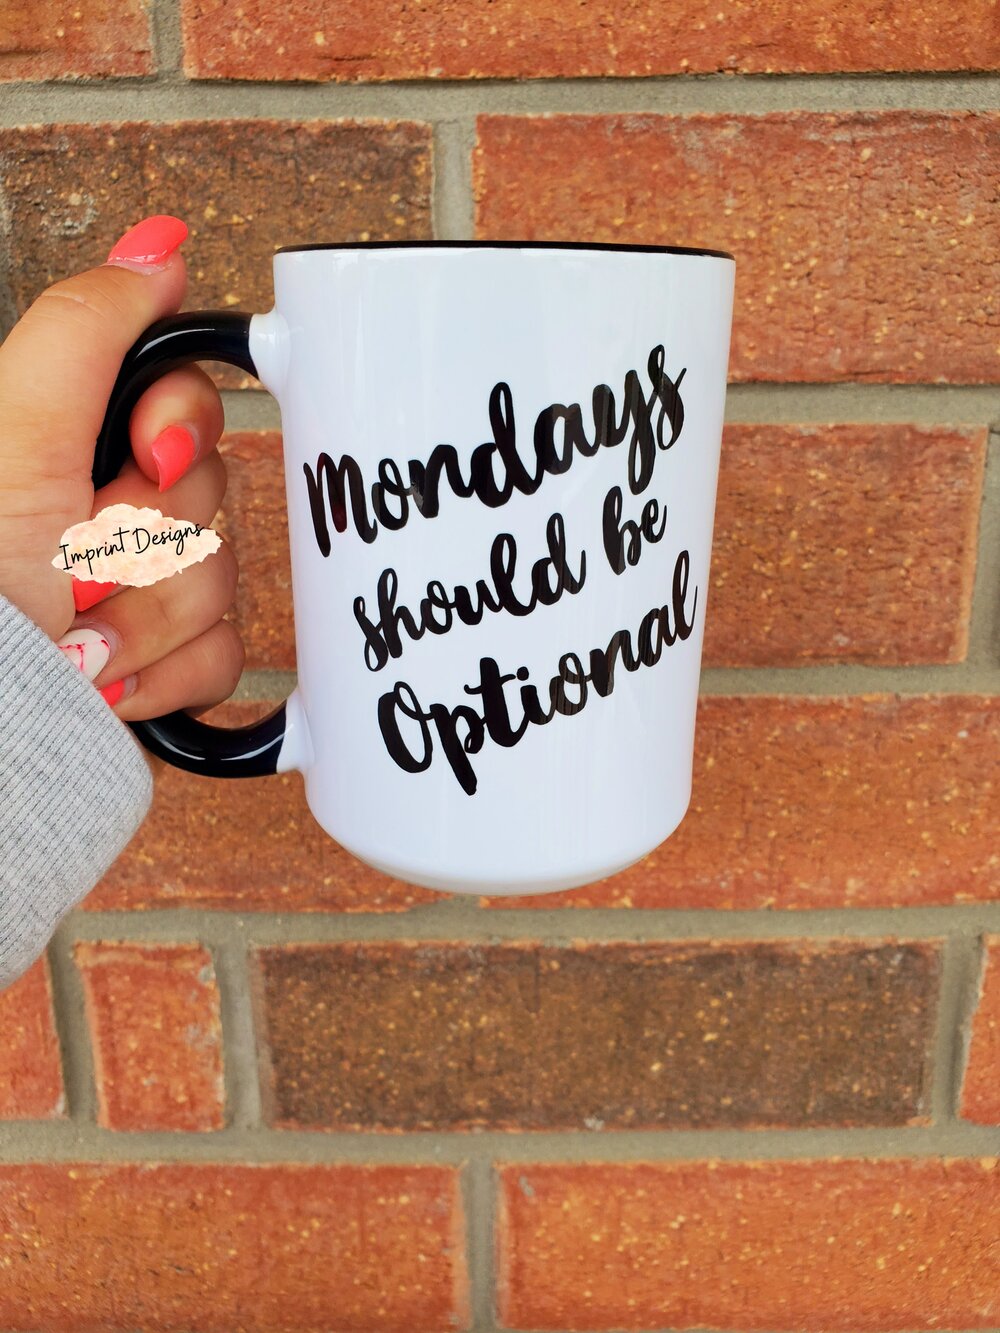 Mondays Should be Optional Mug